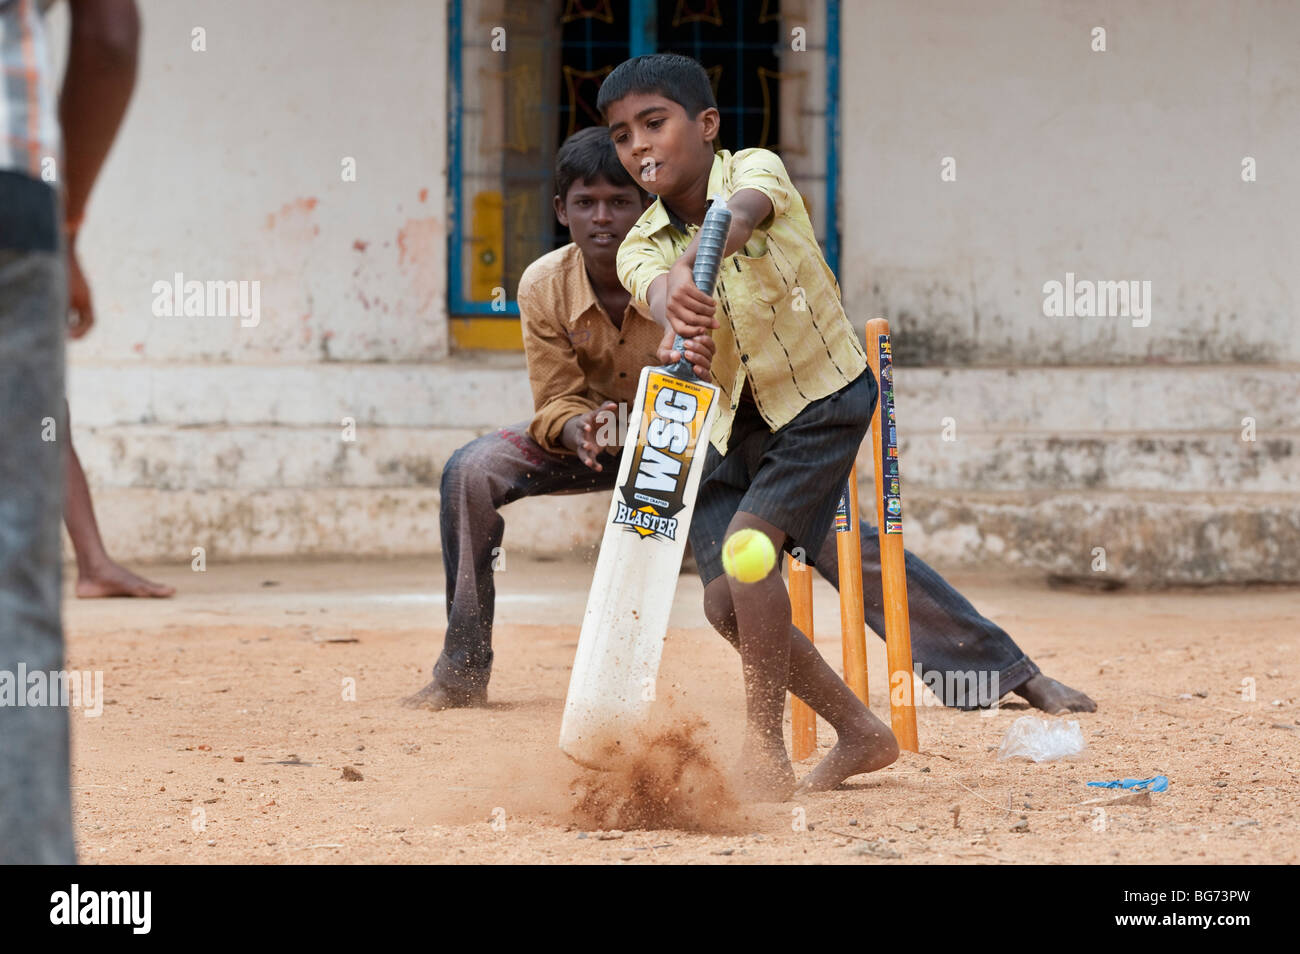 Ländlichen indischen Dorf jungen Kricket spielen in einem Dorf. Nallaguttapalli, Andhra Pradesh, Indien Stockfoto